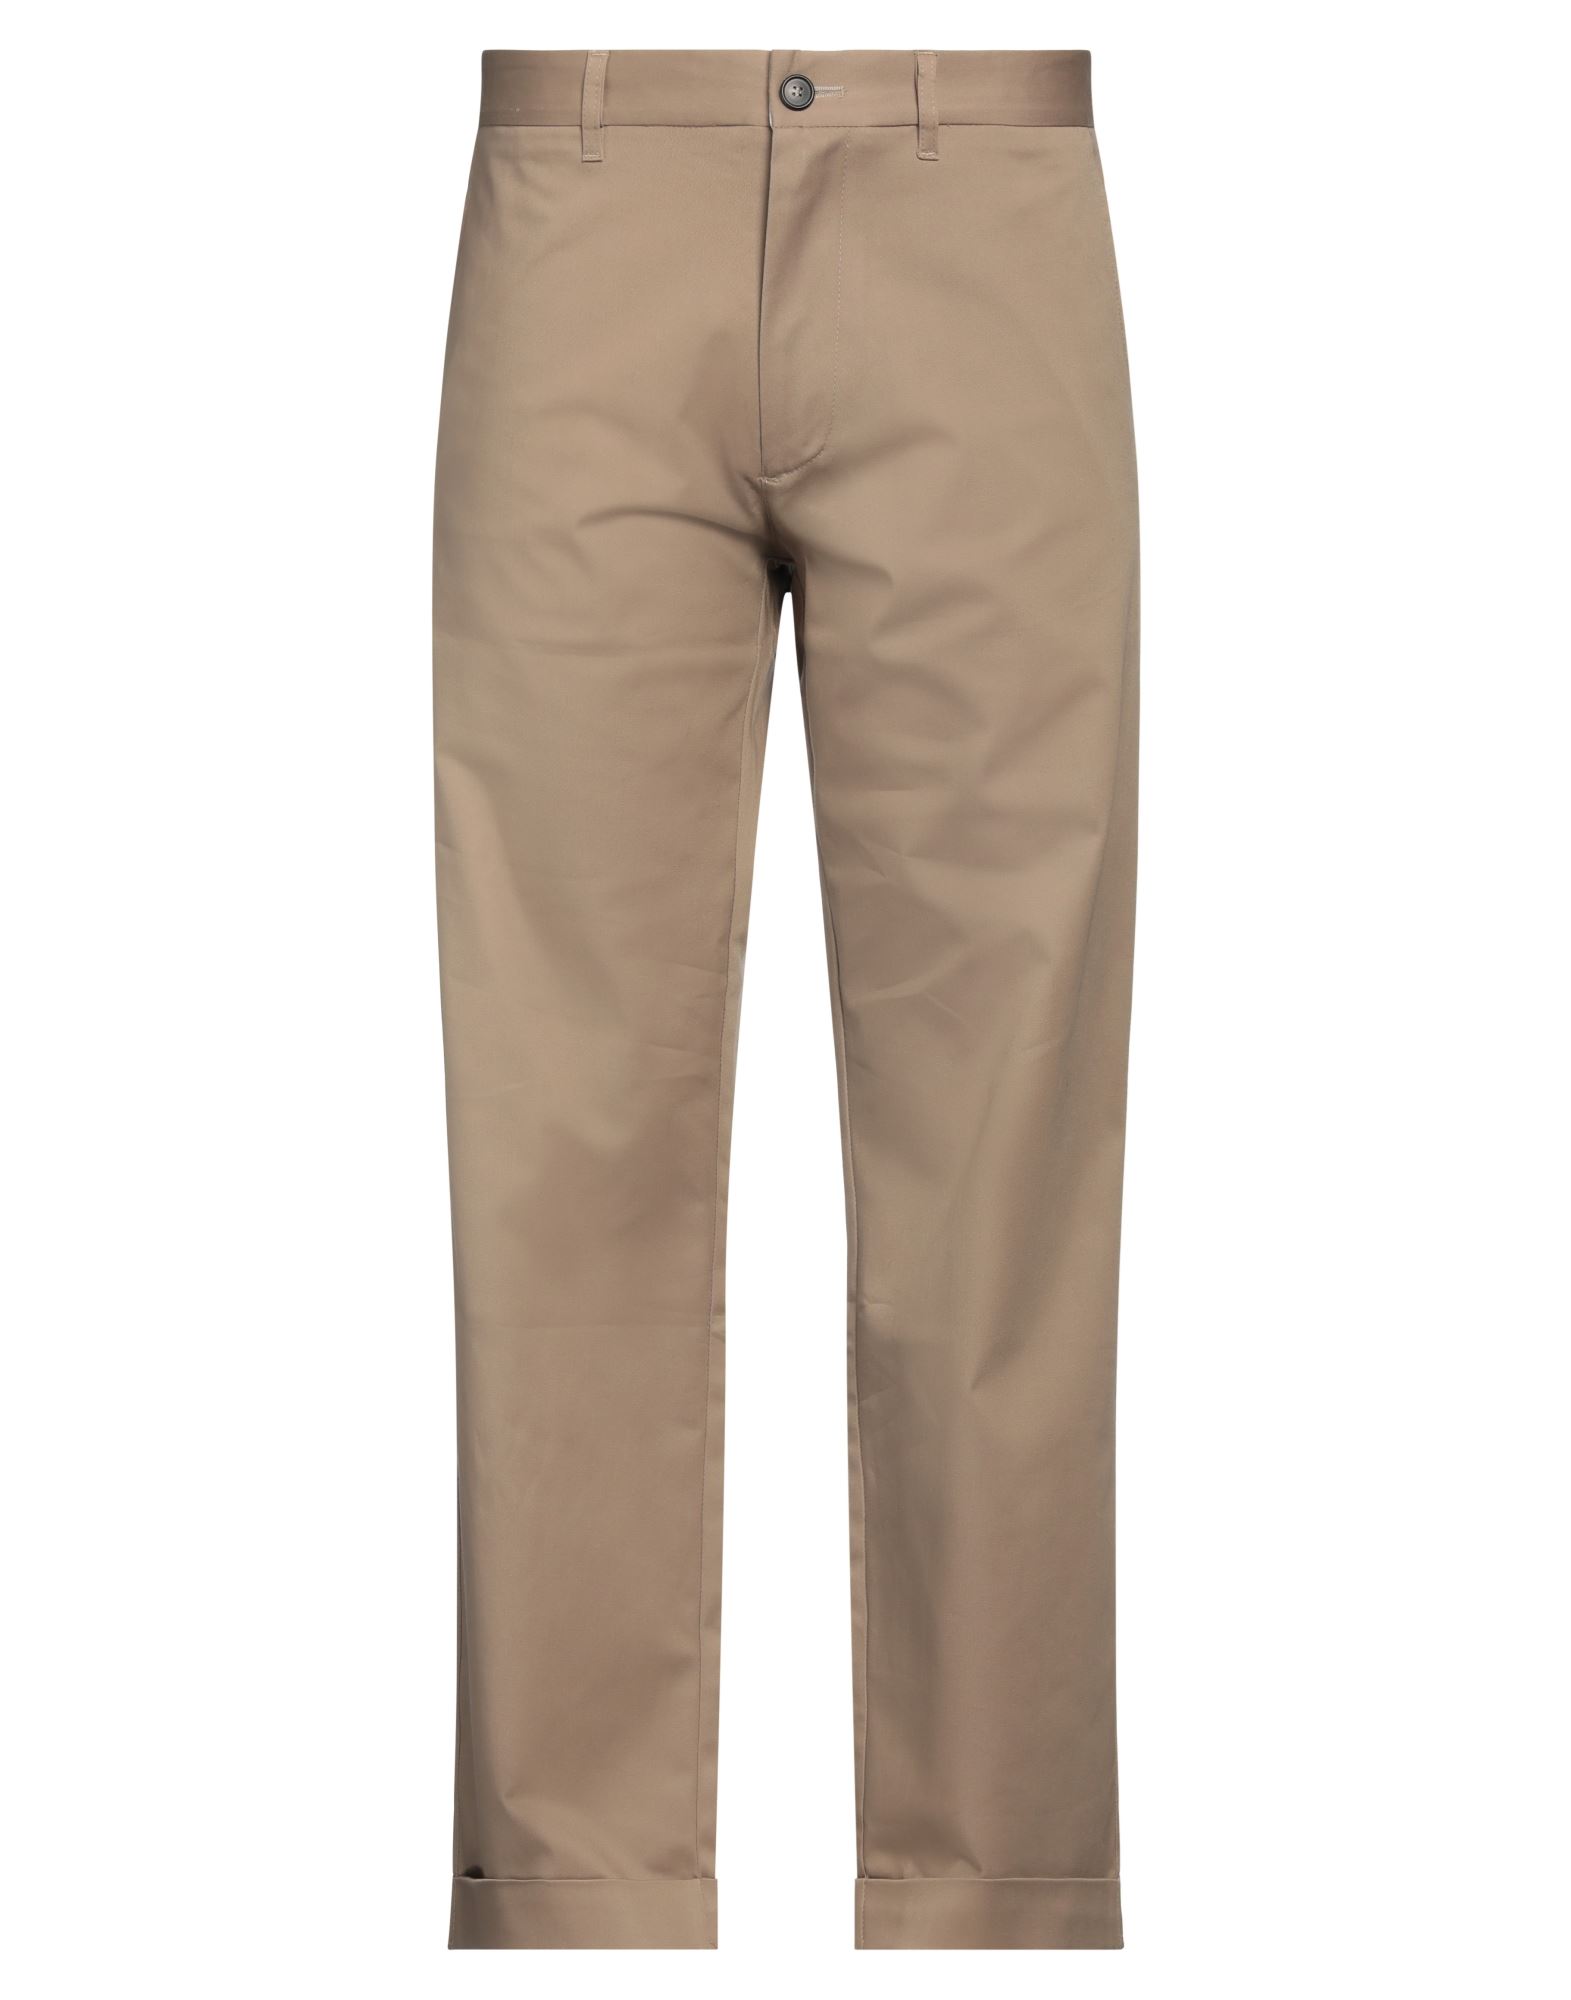 Société Anonyme Man Pants Light Brown Size Xl Cotton, Elastane In Beige